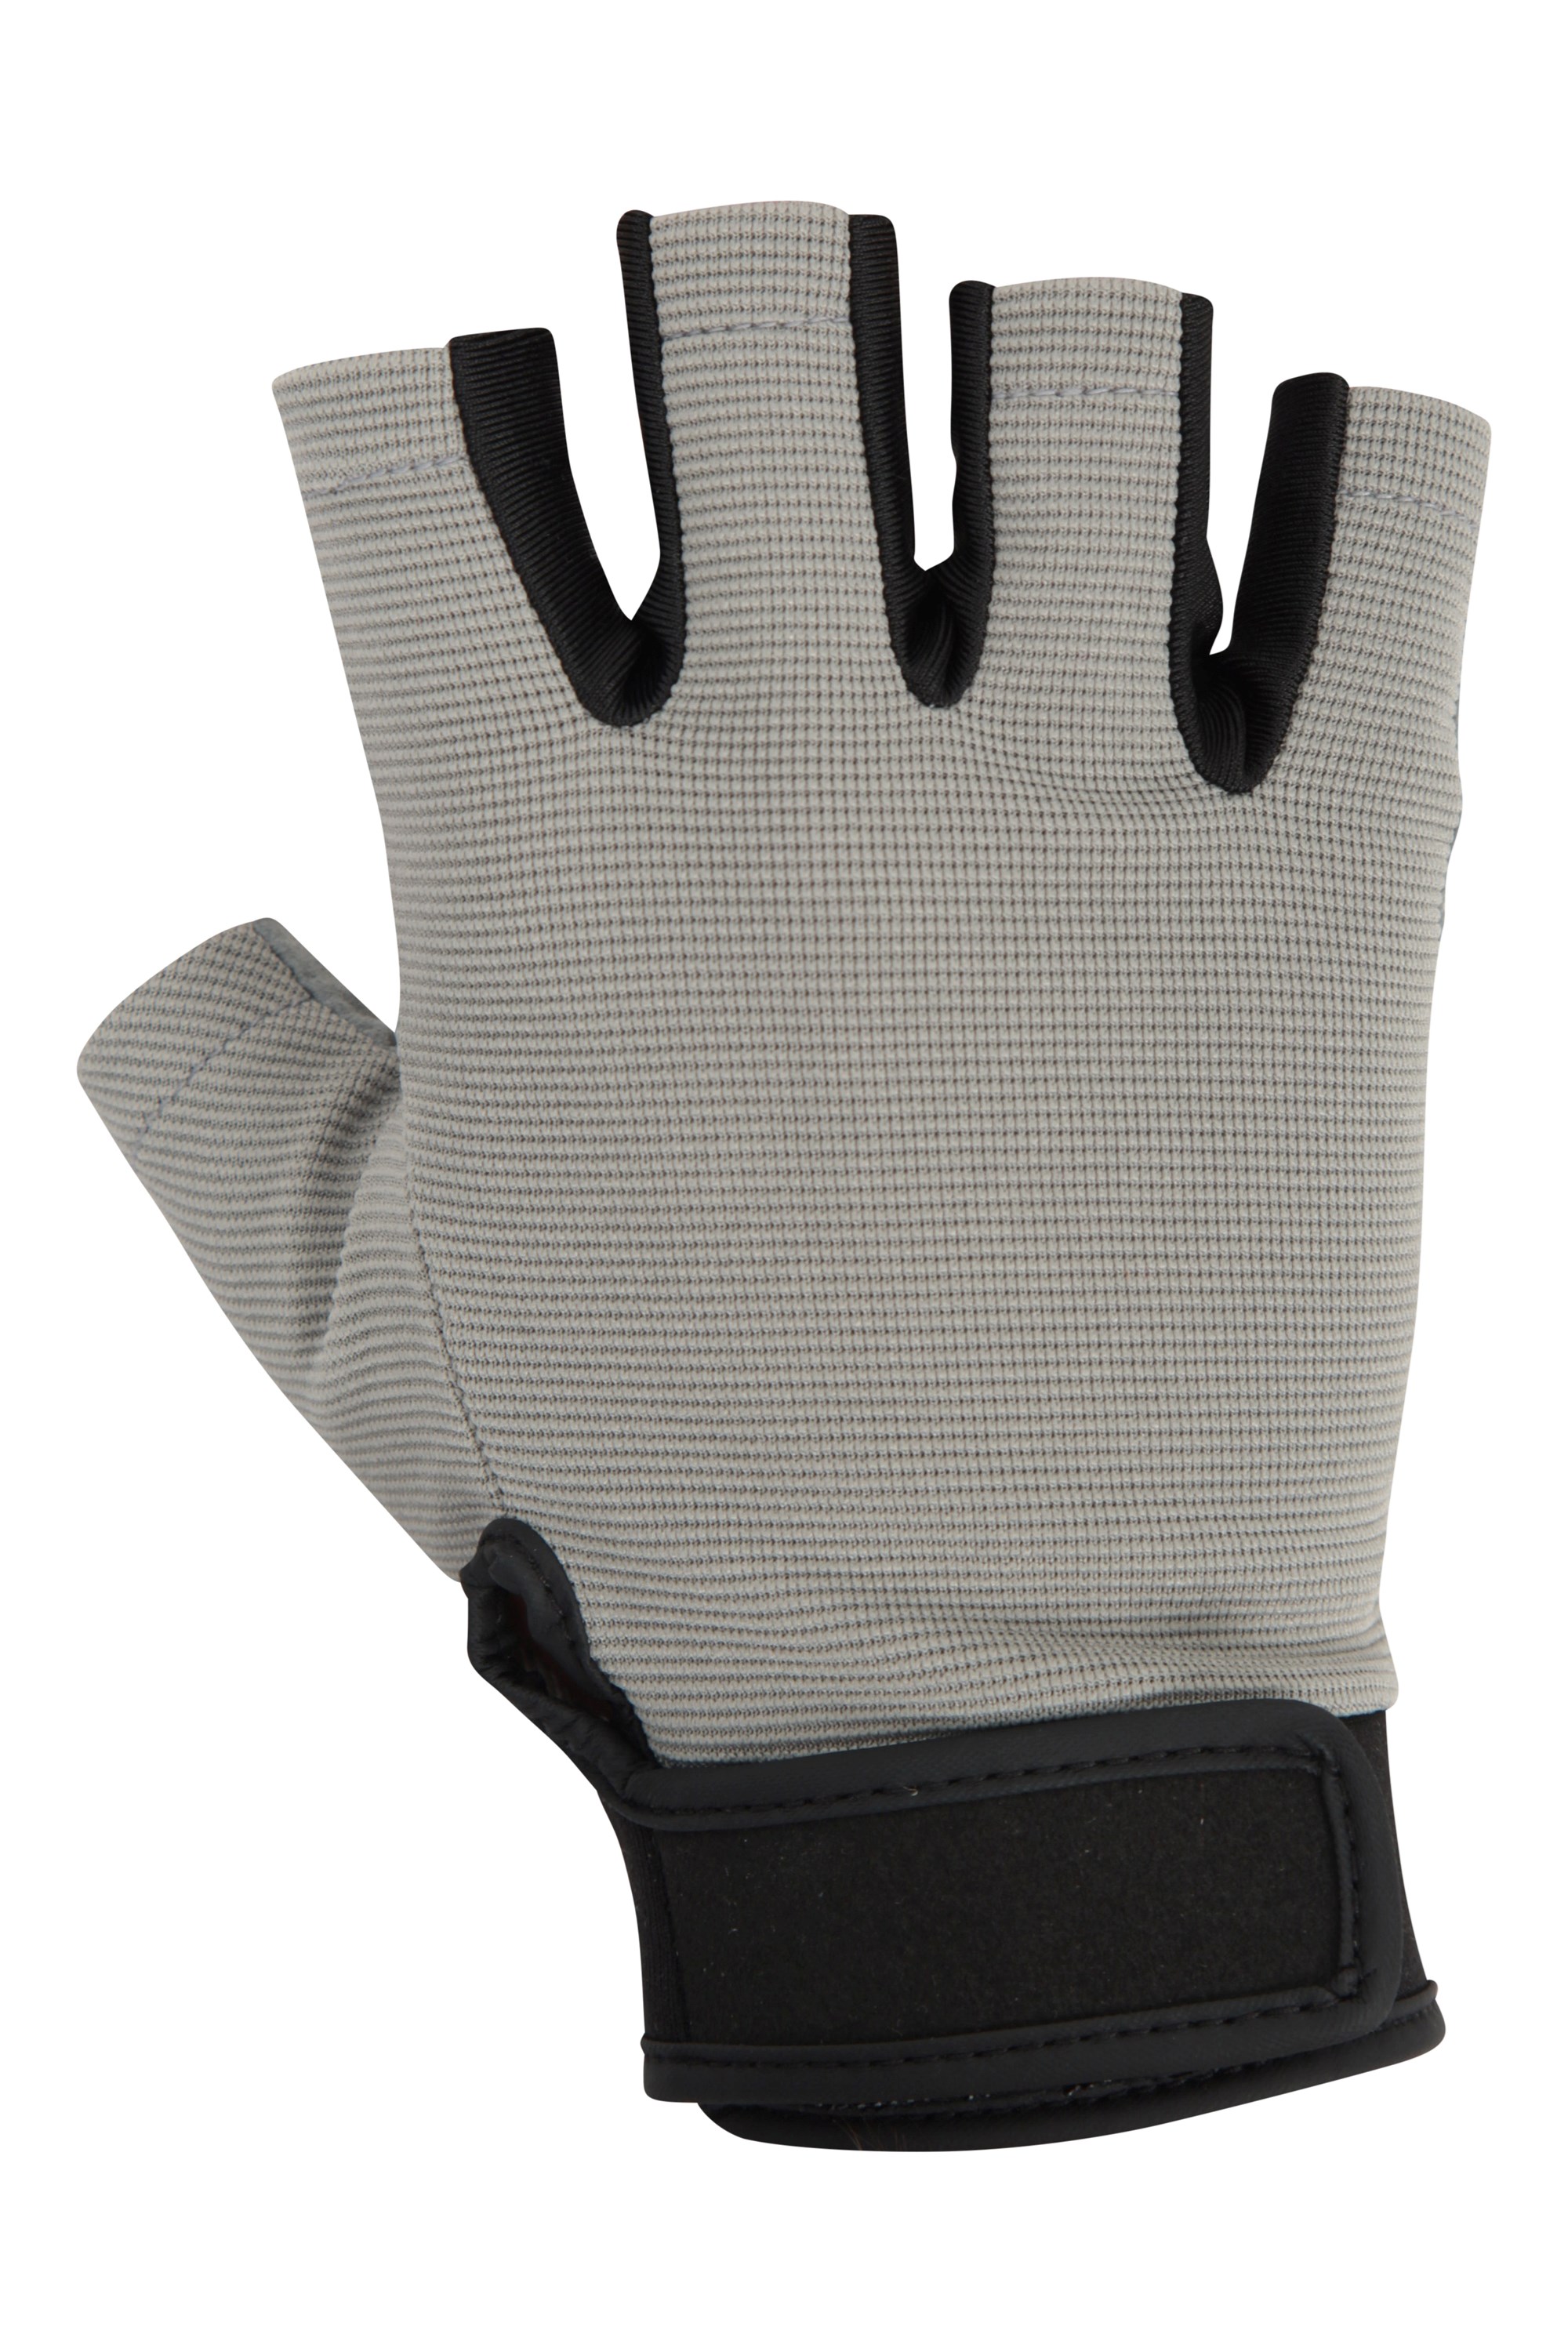 Universal Fingerless Fishing Gloves